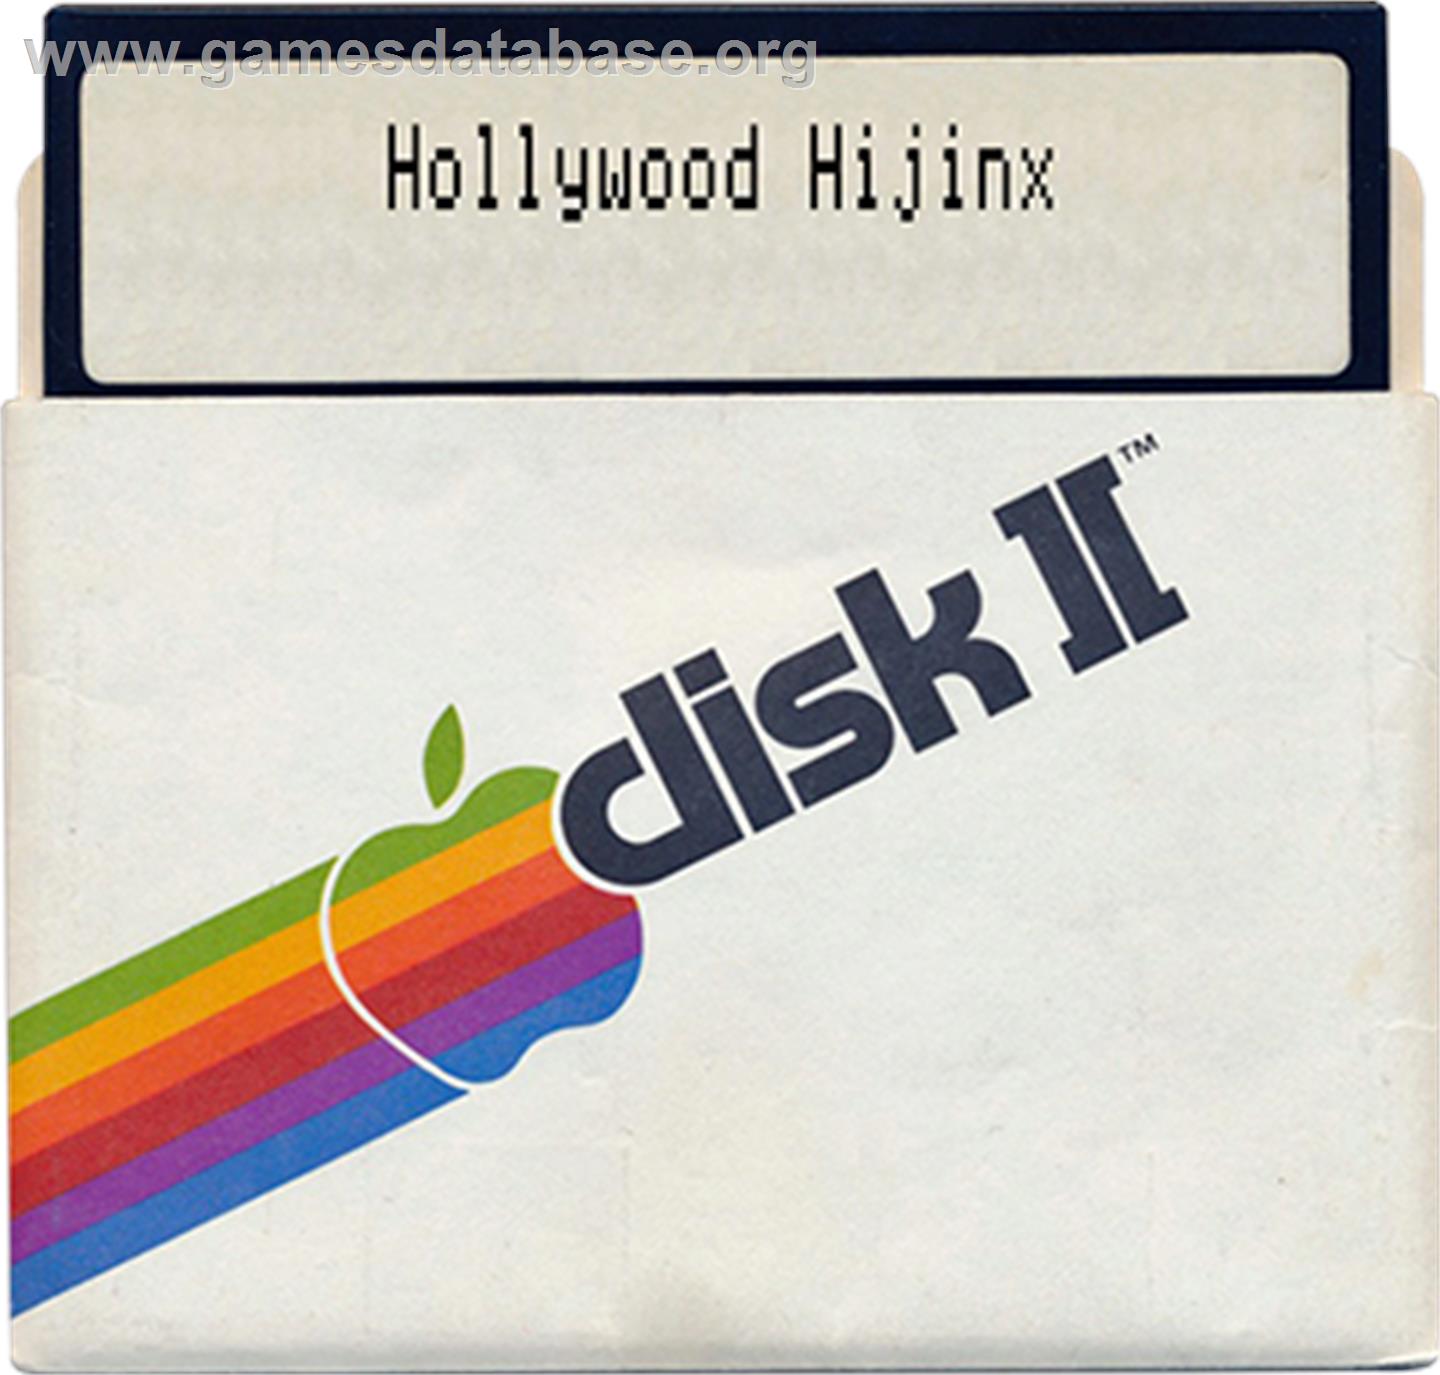 Hollywood Hijinx - Apple II - Artwork - Disc